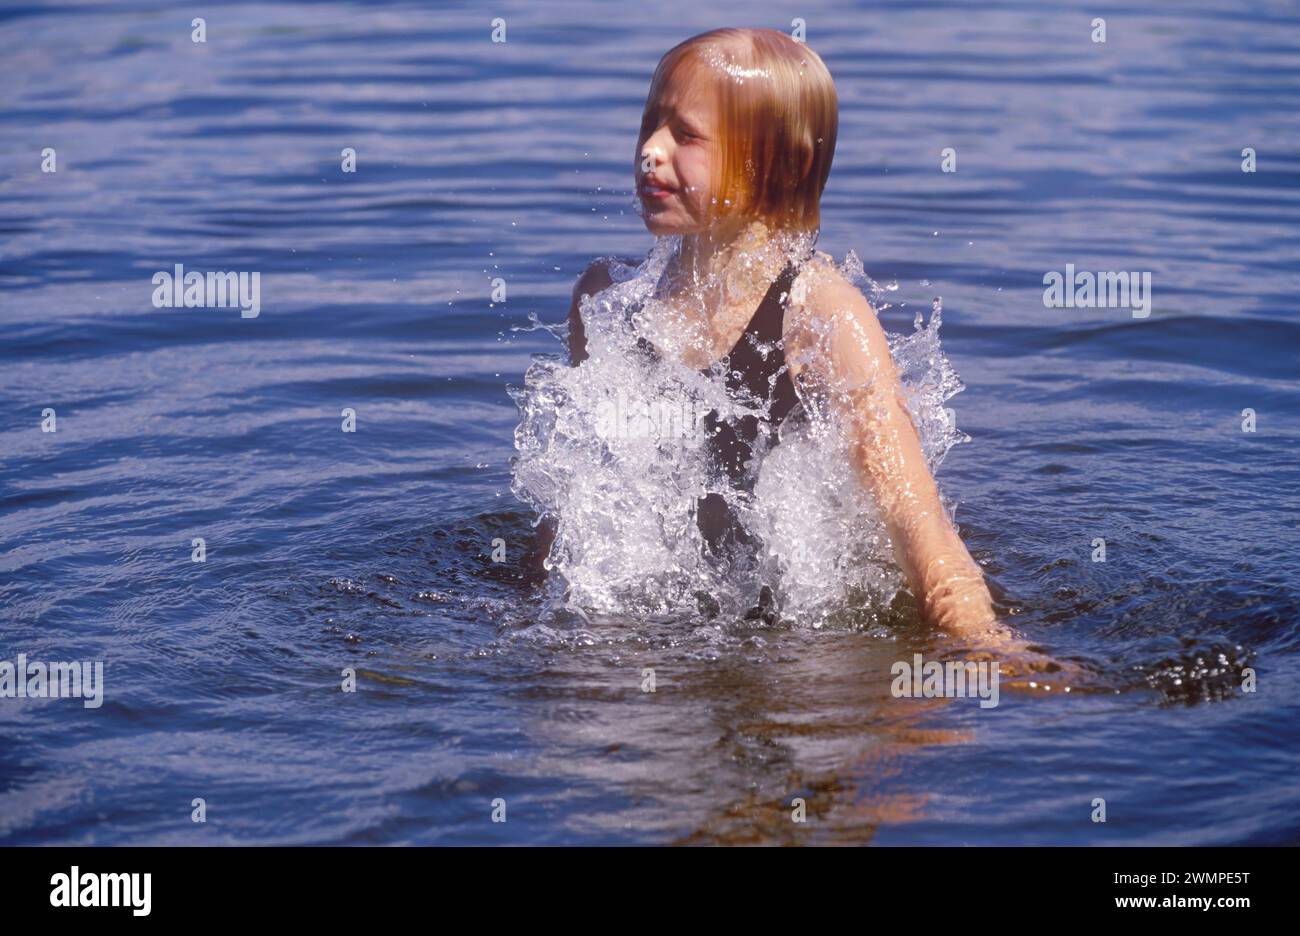 Jeune fille se baignant Banque D'Images